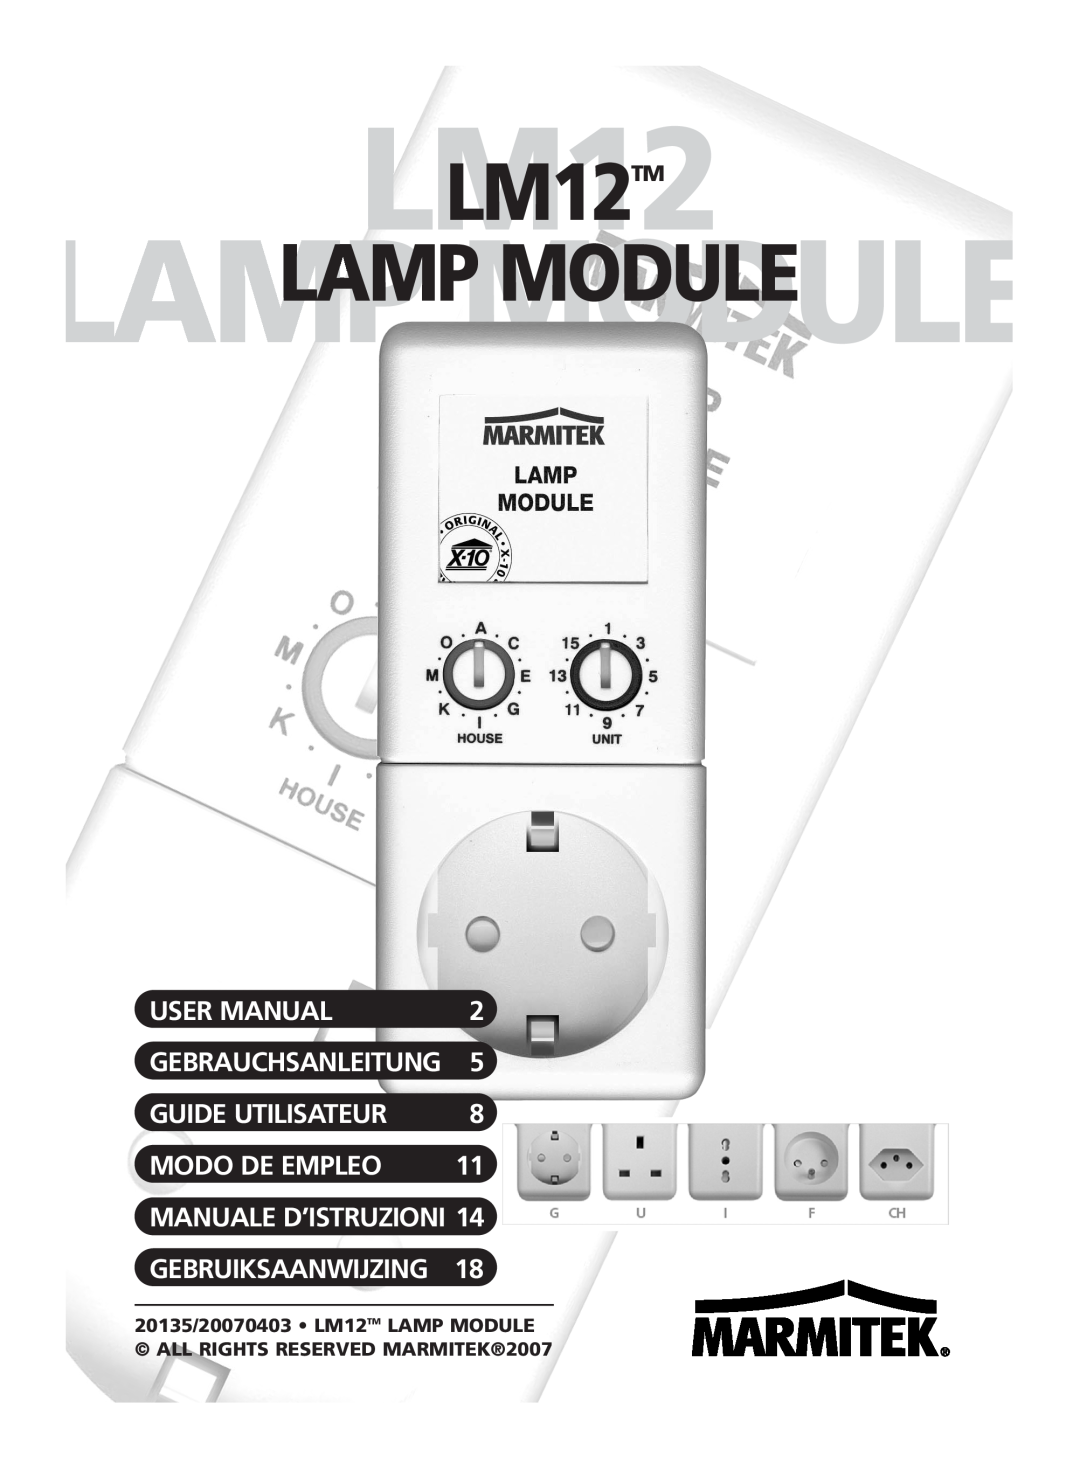 Marmitek user manual LM12LM12TM, Lamplampmodulemodule, Guide Utilisateur, Modo De Empleo, Manuale D’Istruzioni 